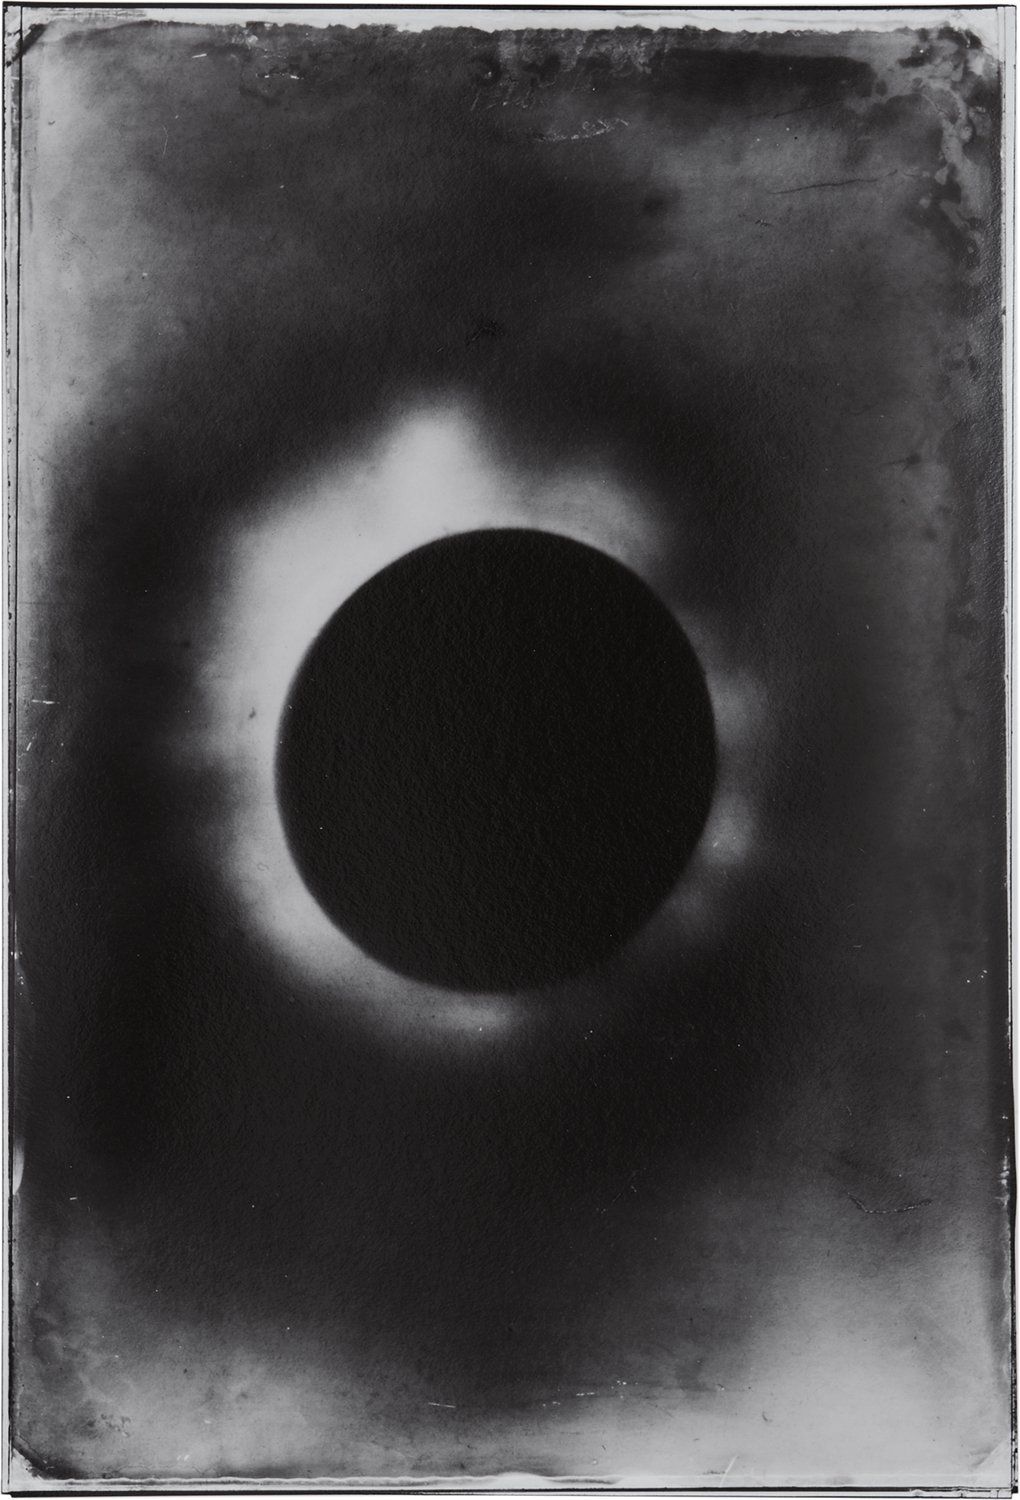 Eclipse-4.jpg